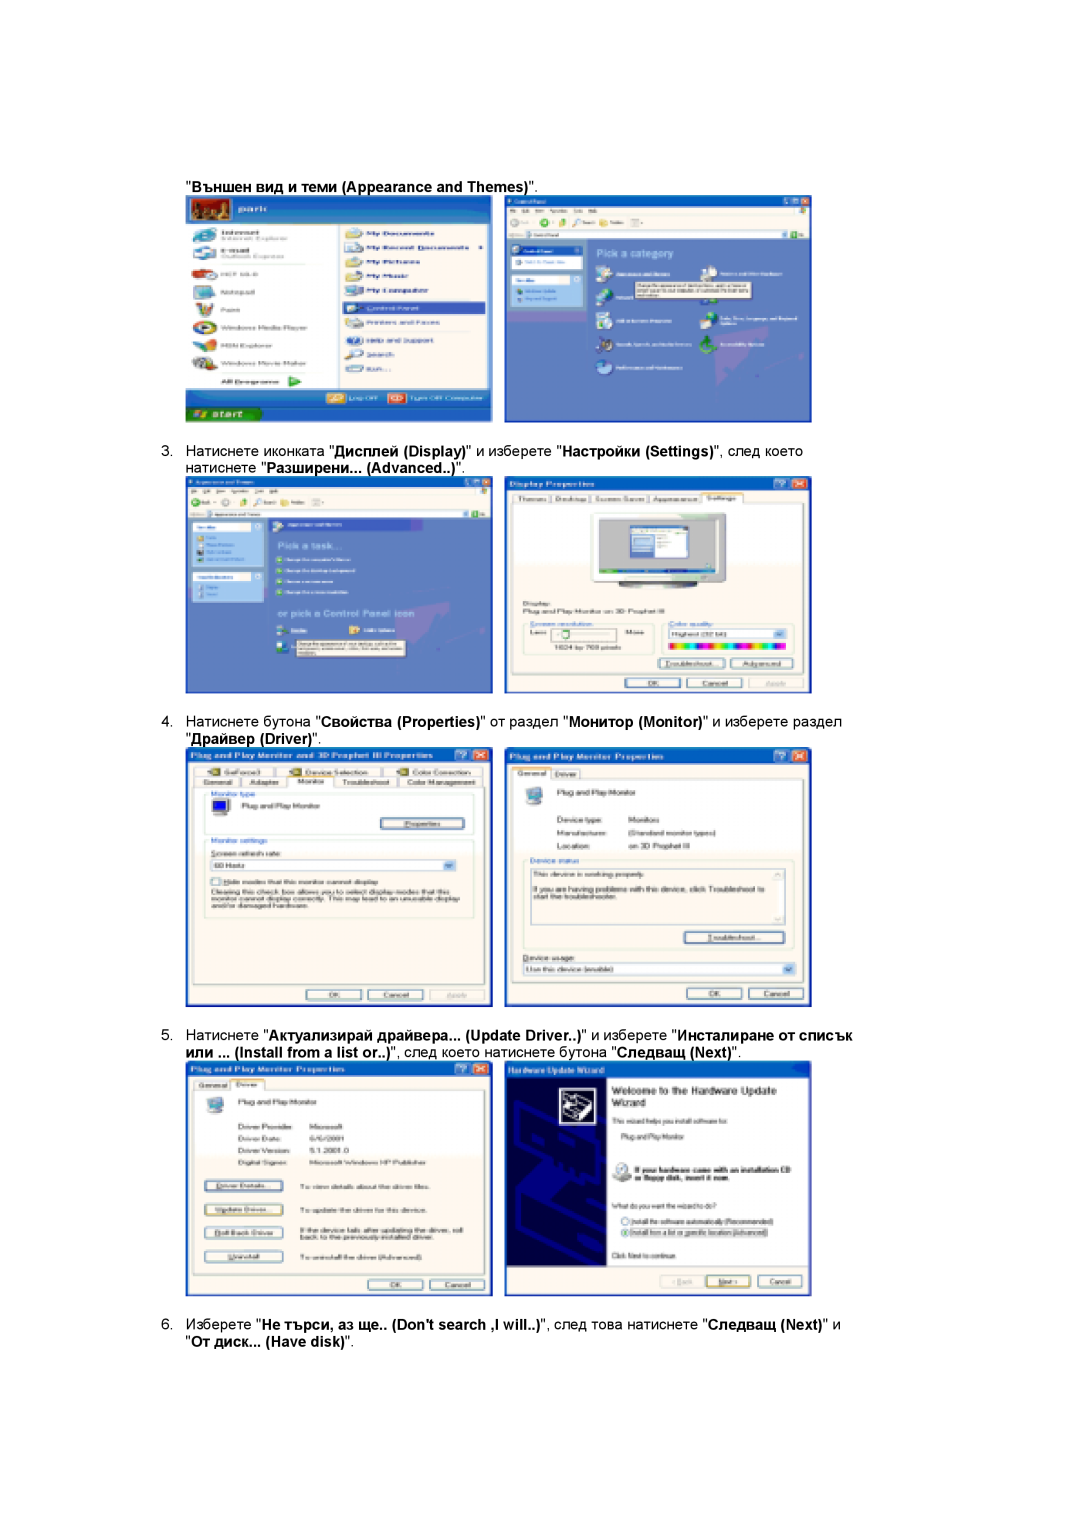 Samsung LS19DOCSS/EDC, LS19DOWSSZ/EDC manual Външен вид и теми Appearance and Themes 